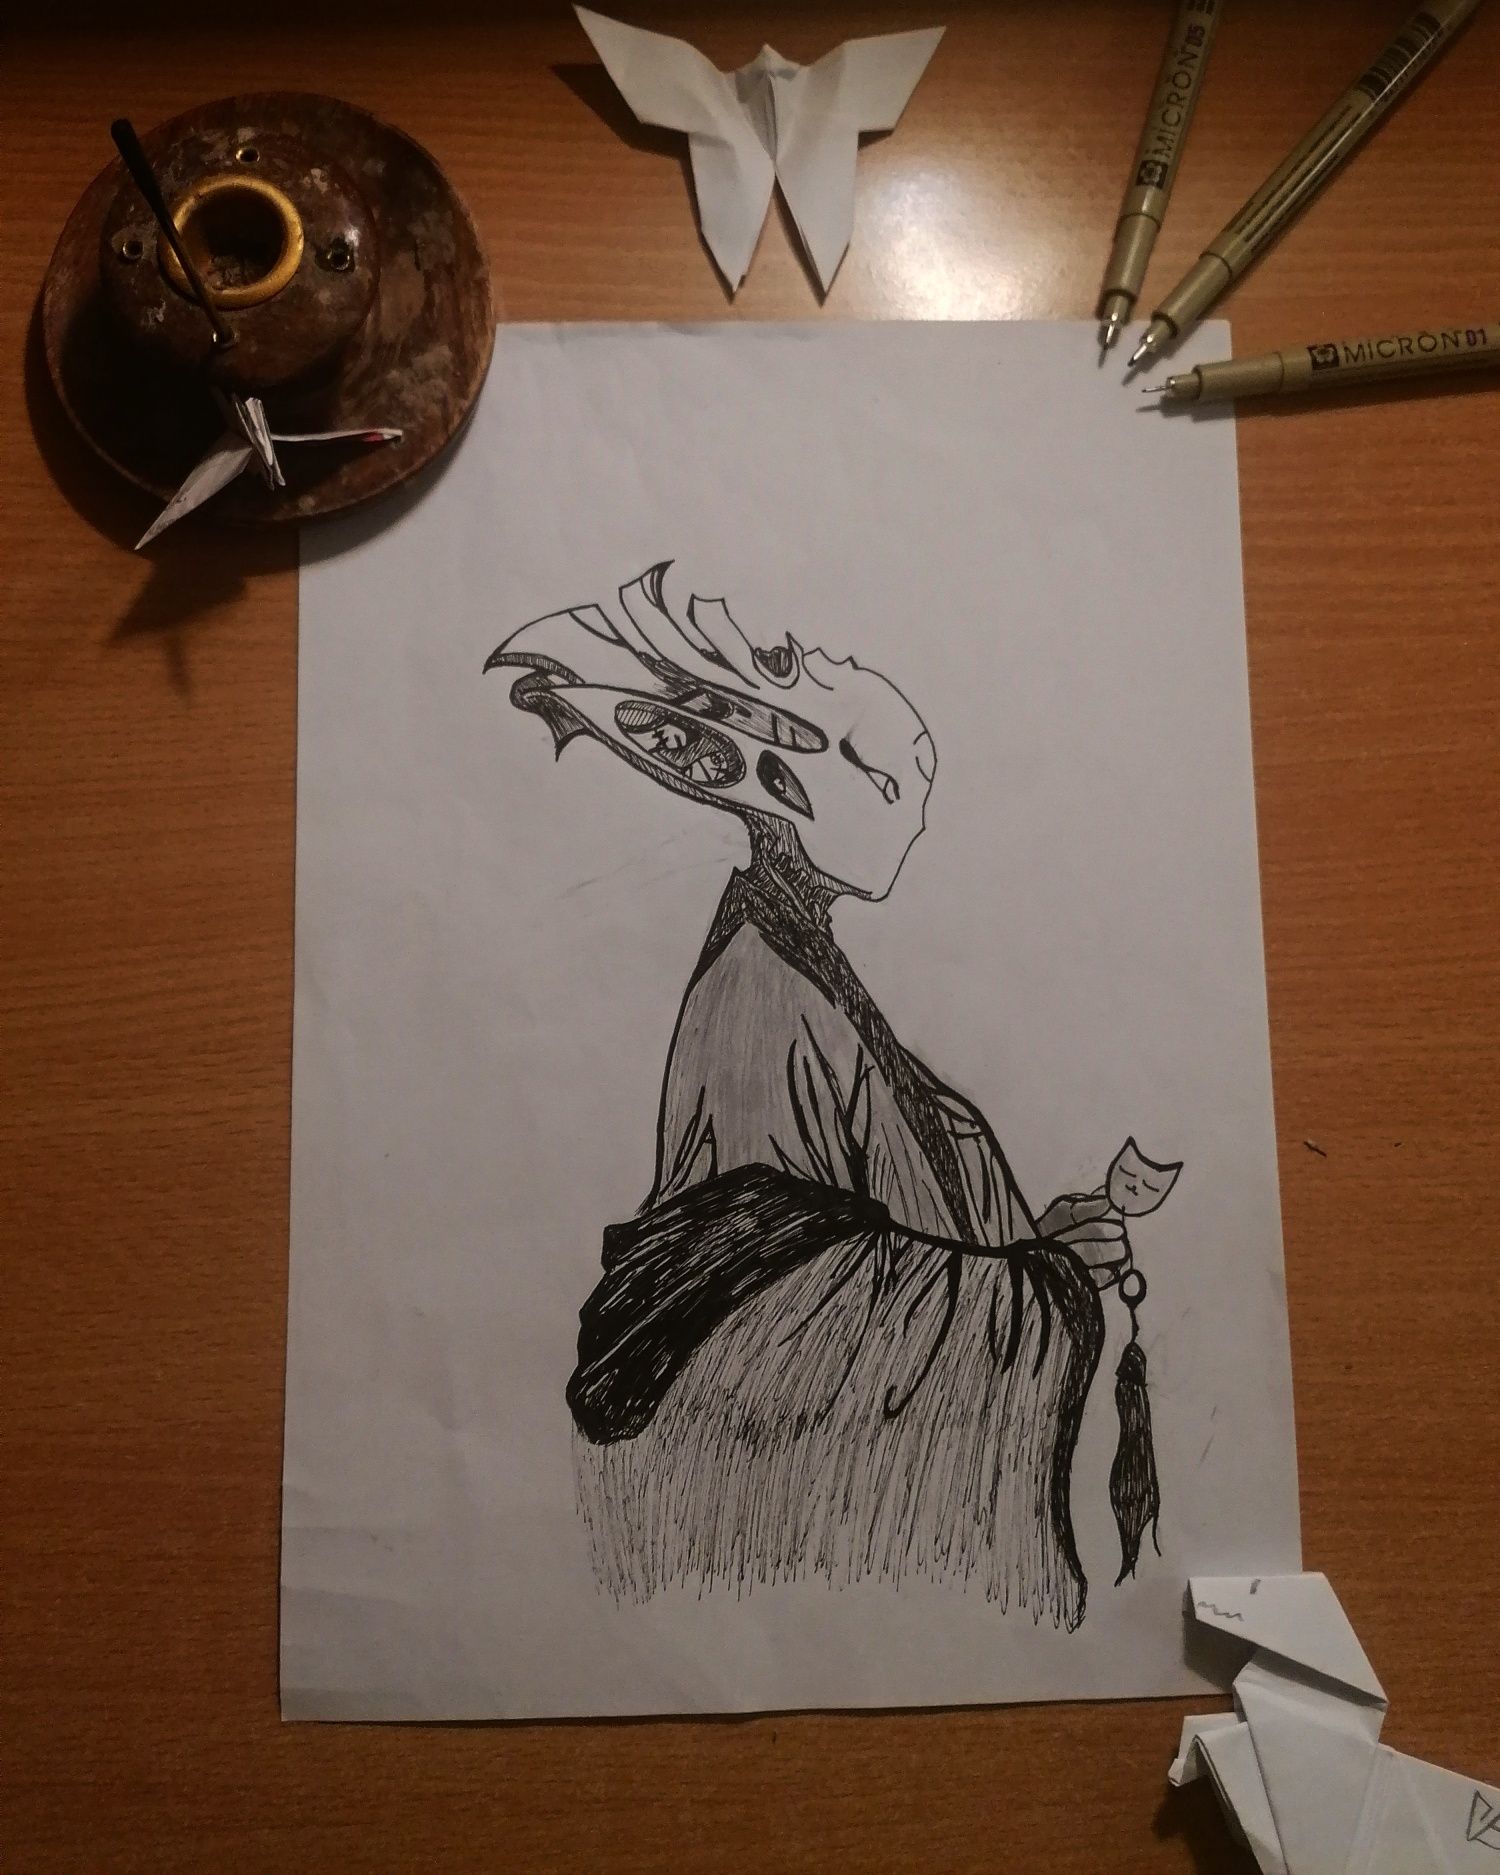 Desene in creion sau si origami cadou Sectorul 2 • OLX.ro